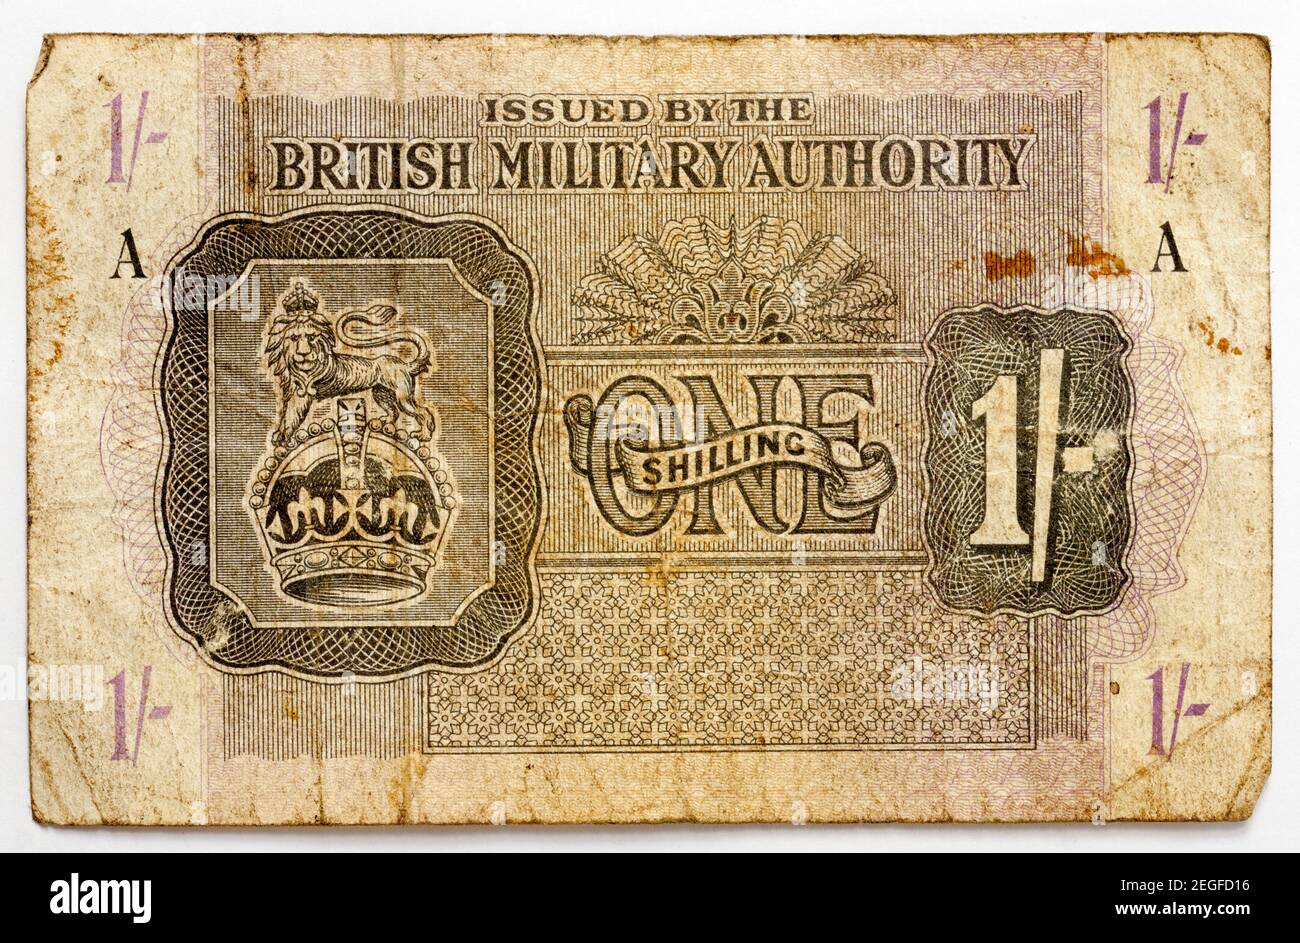 Nota del Banco de la Autoridad Militar Británica - One Shilling Foto de stock